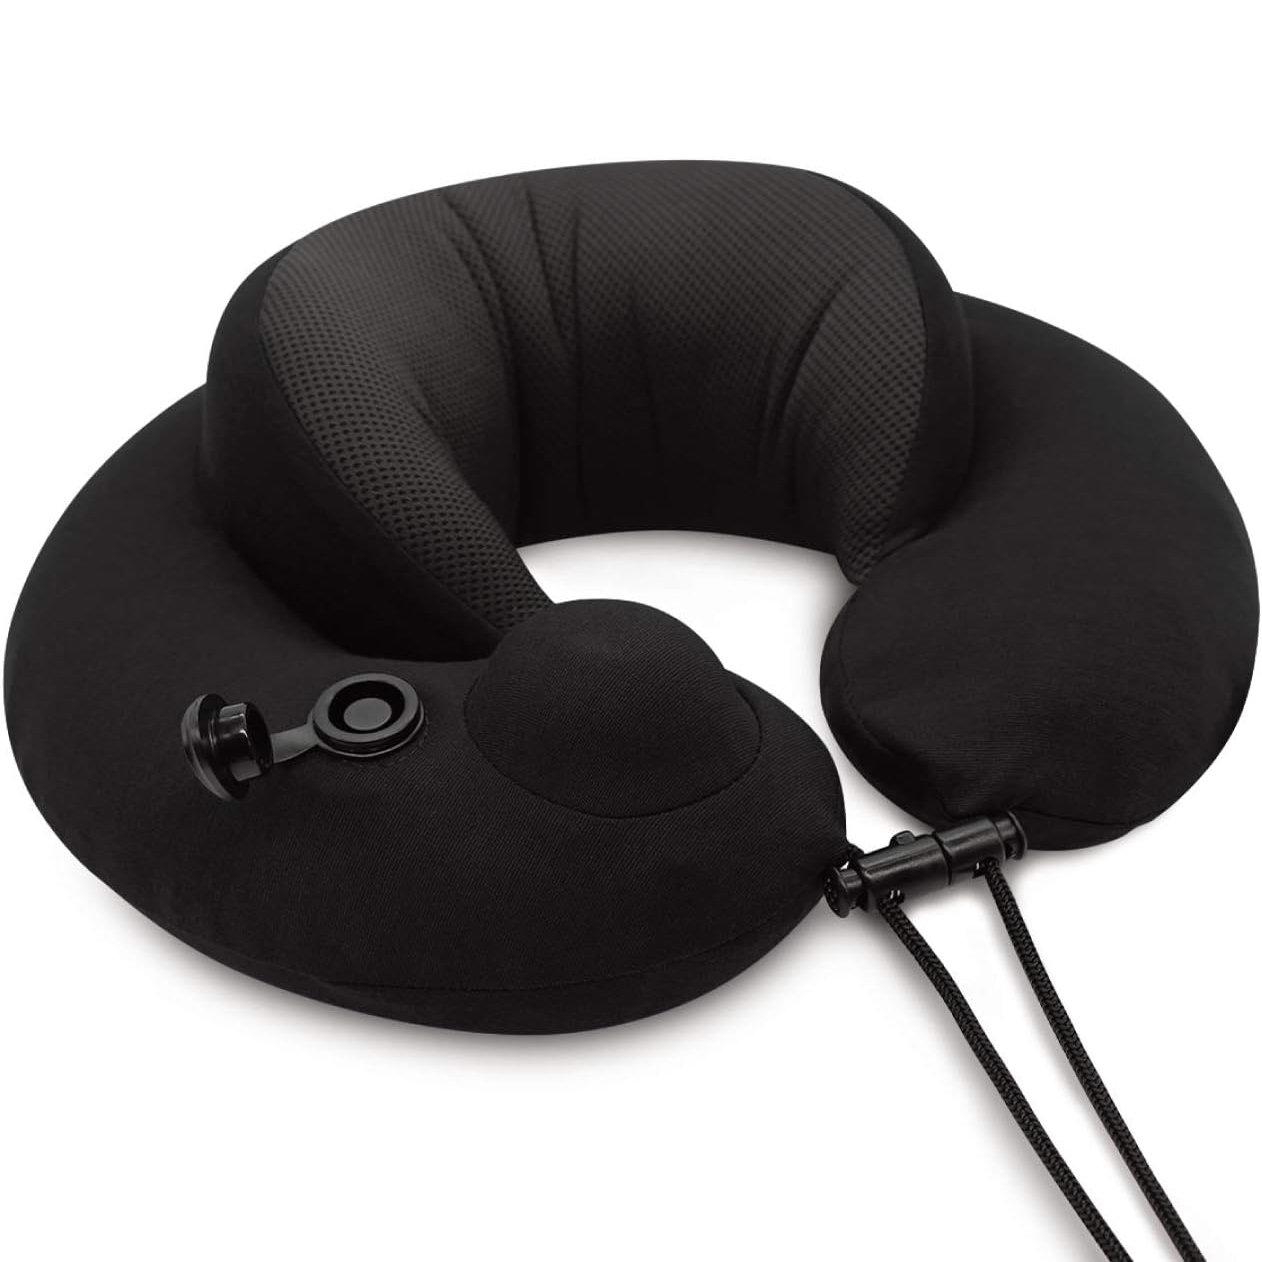 Travelmall - Premium Inflatable Neck Pillow (SW99001PRO)